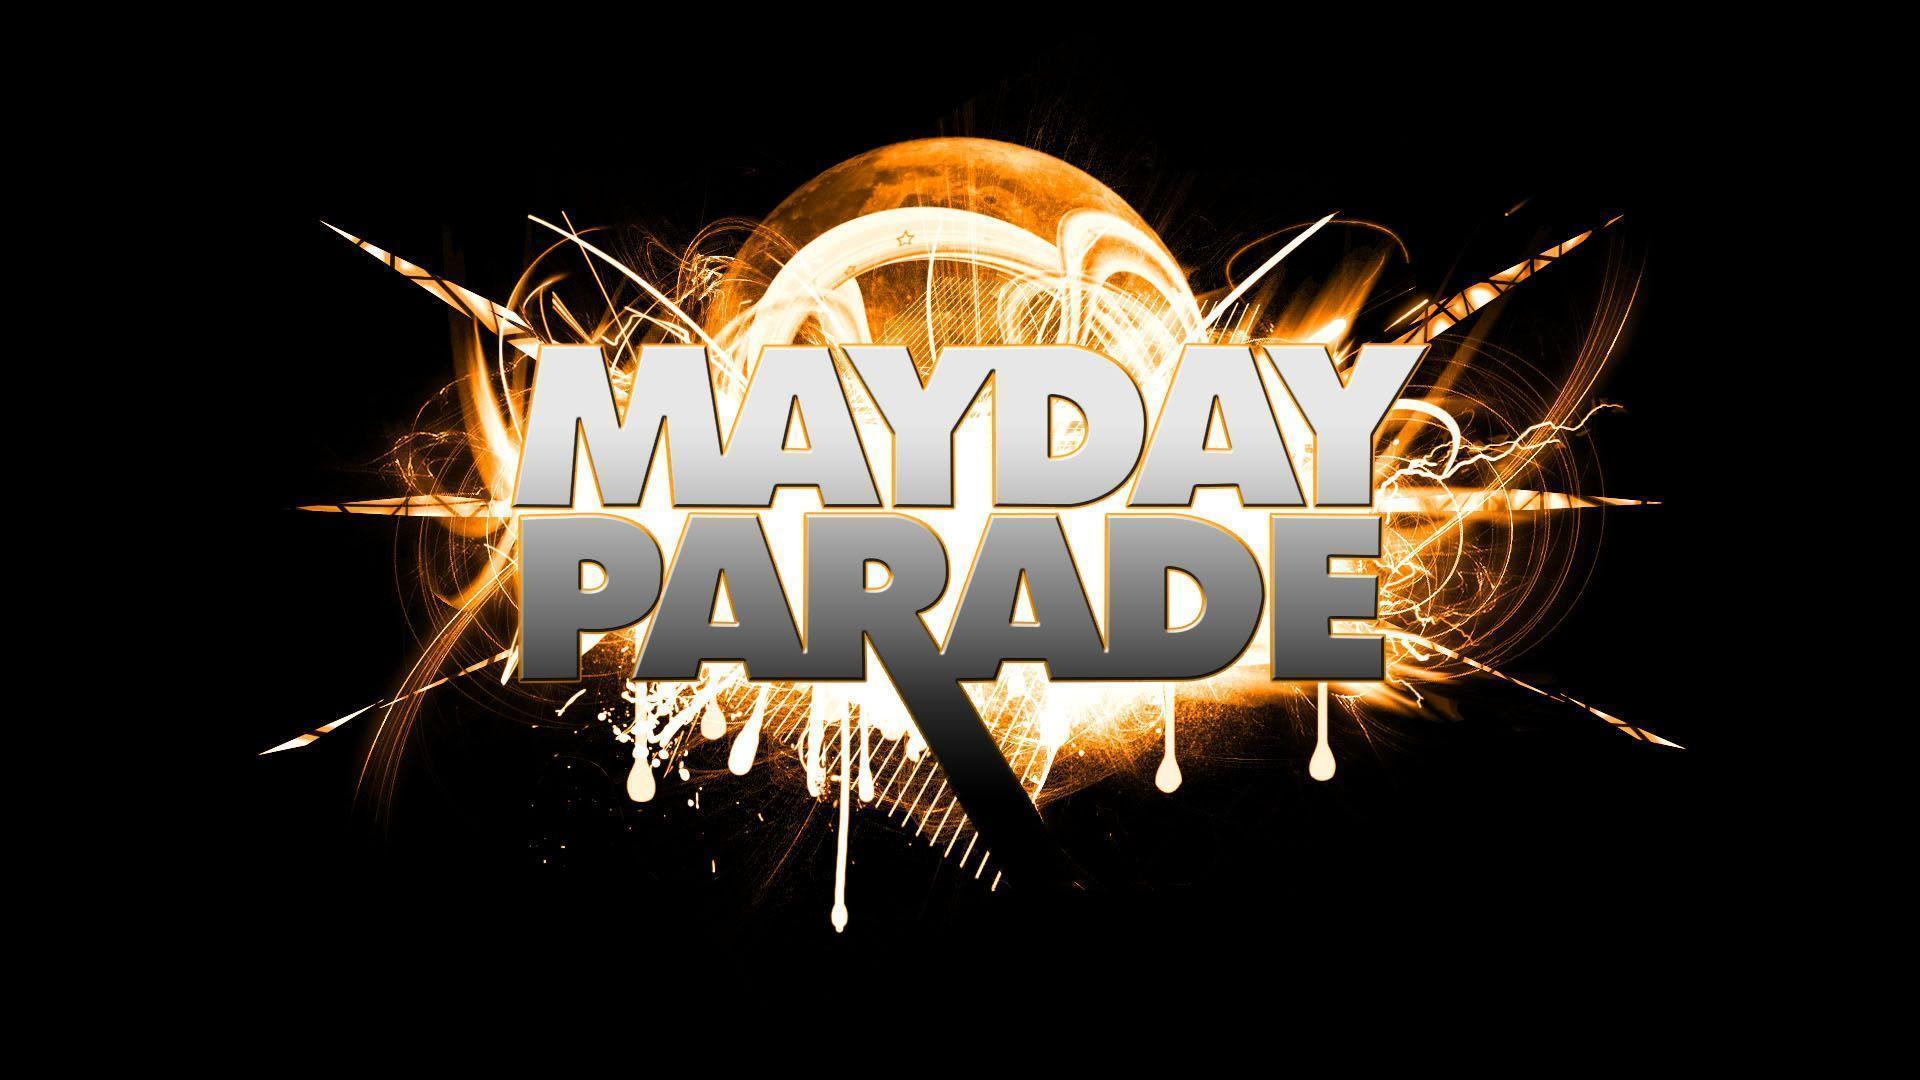 Mayday Parade Live Wallpaper Download Mayday Parade Live 900×613